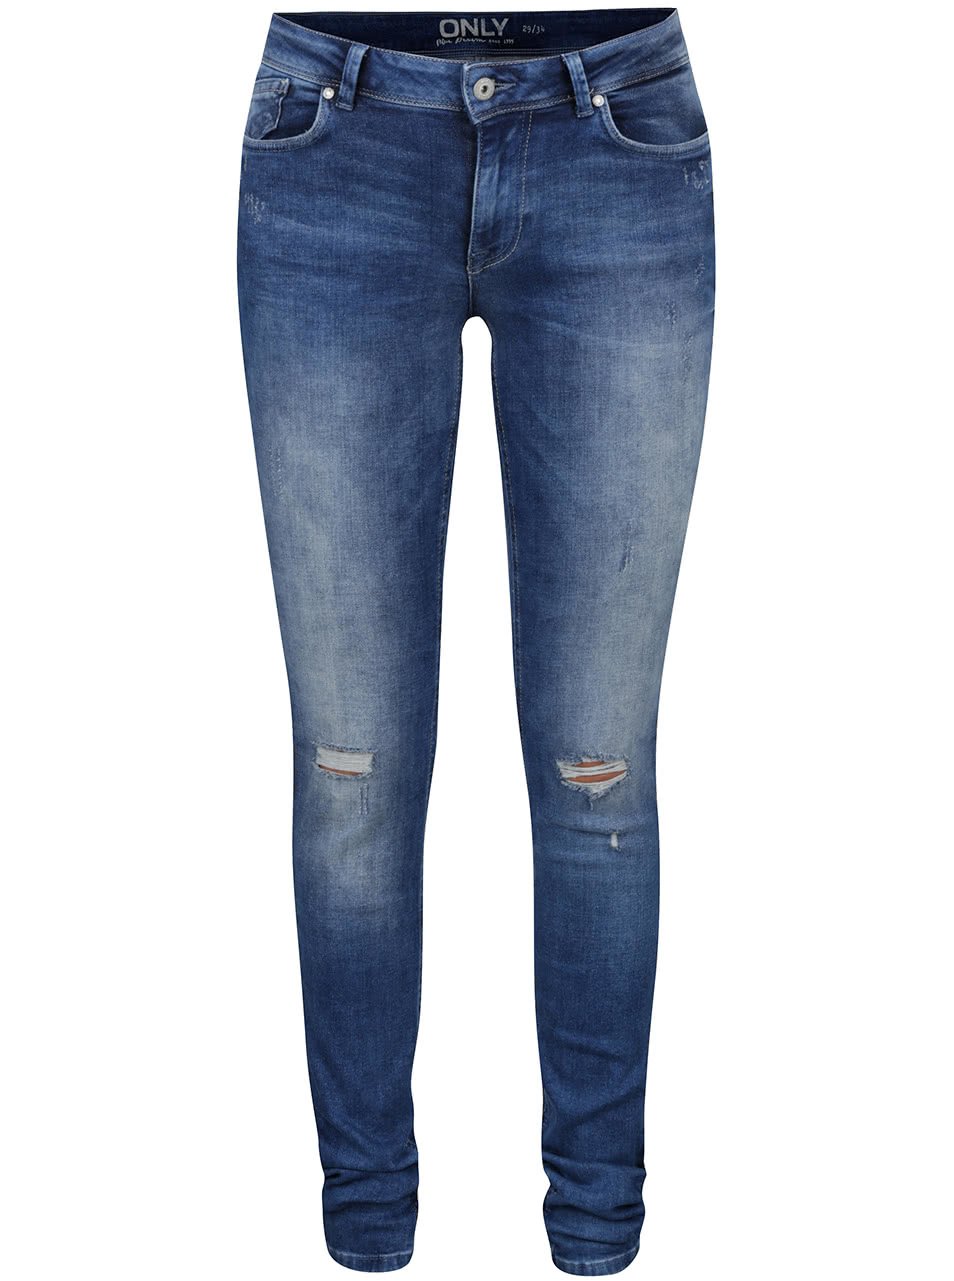 Modré skinny džíny s potrhaným efektem ONLY Carmen